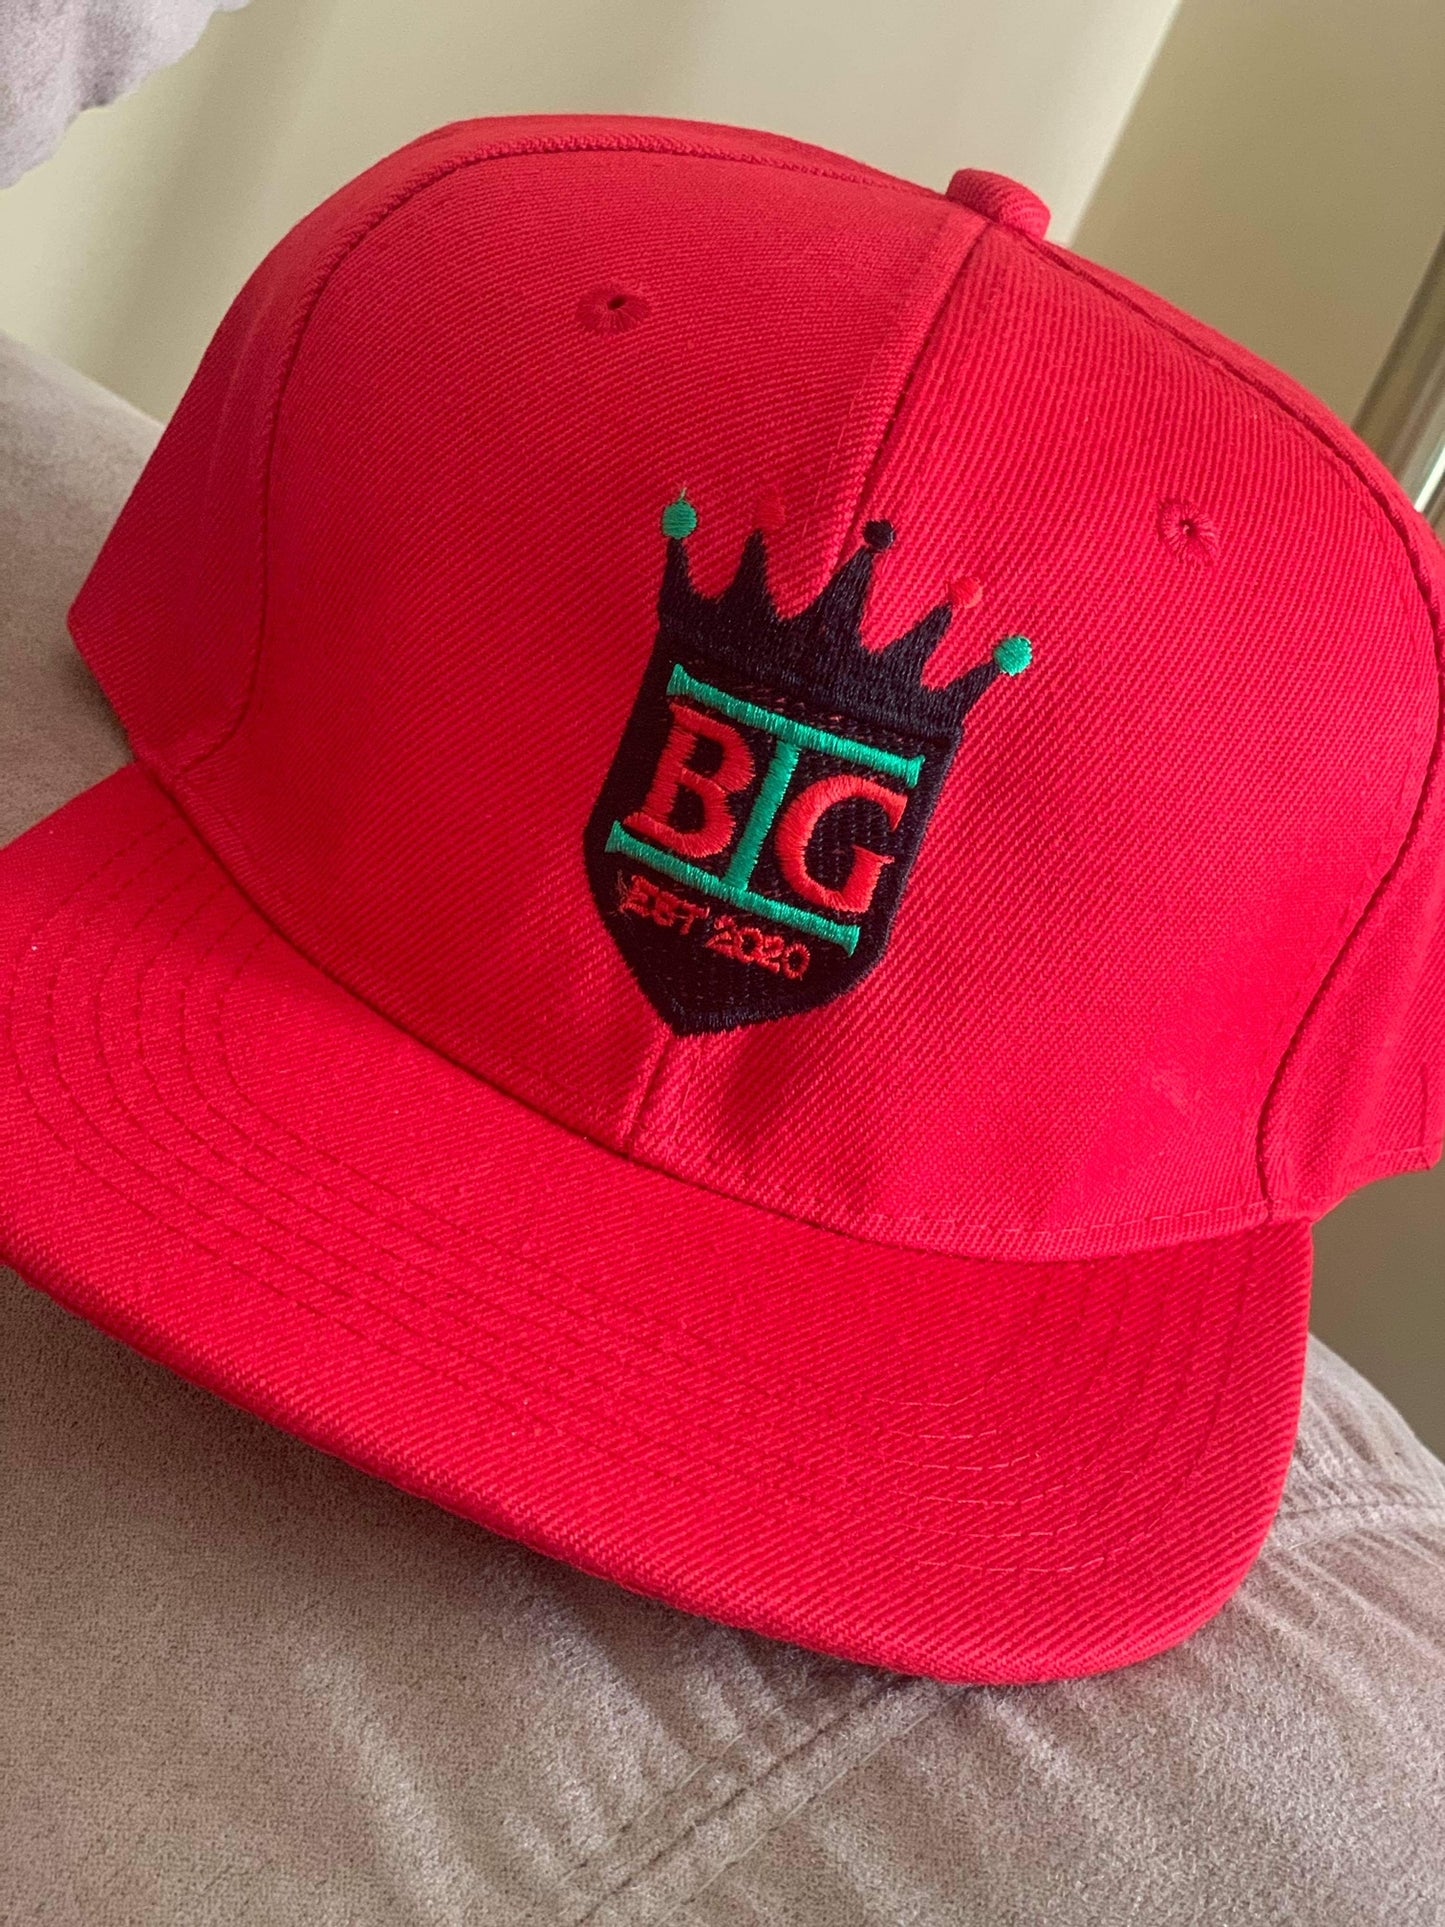 BGI Logo Hat